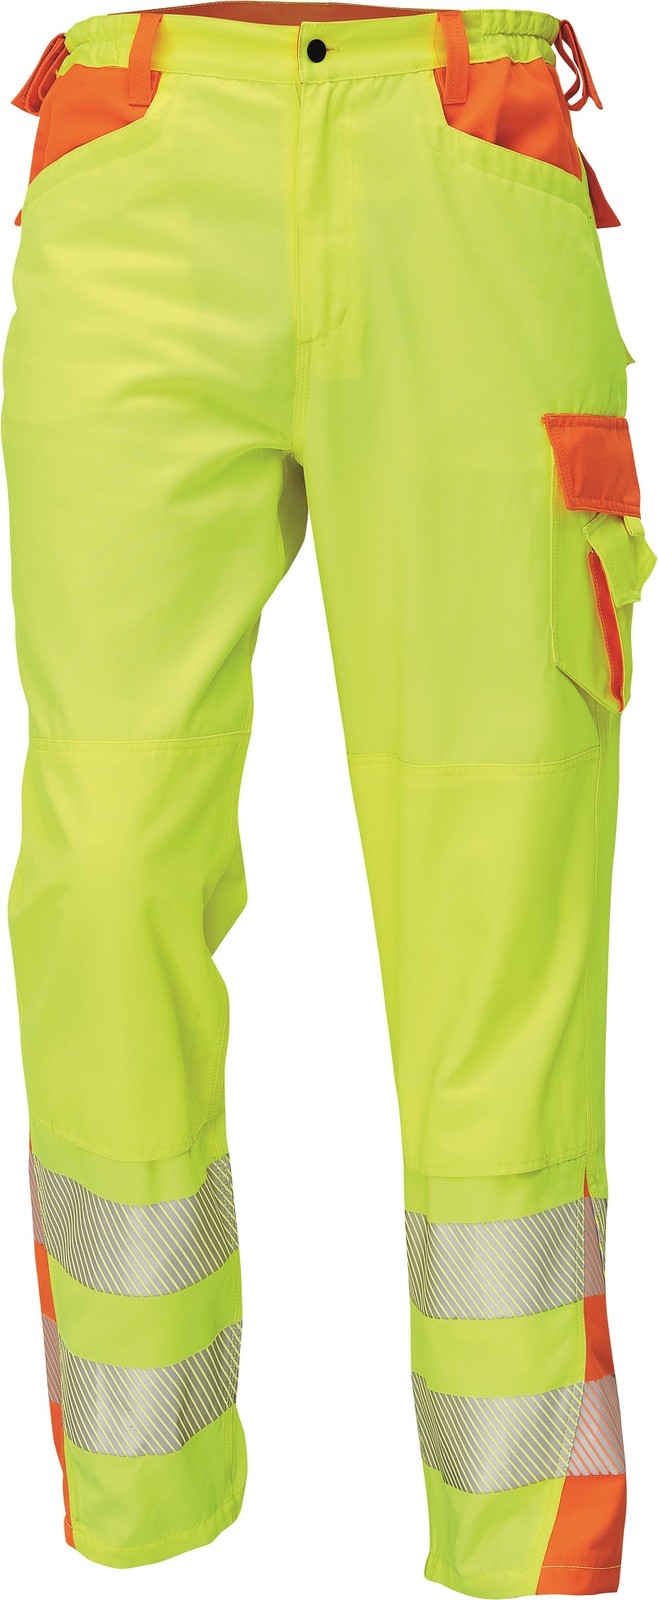 Reflexné pracovné nohavice Cerva Latton - veľkosť: 52, farba: žltá/oranžová